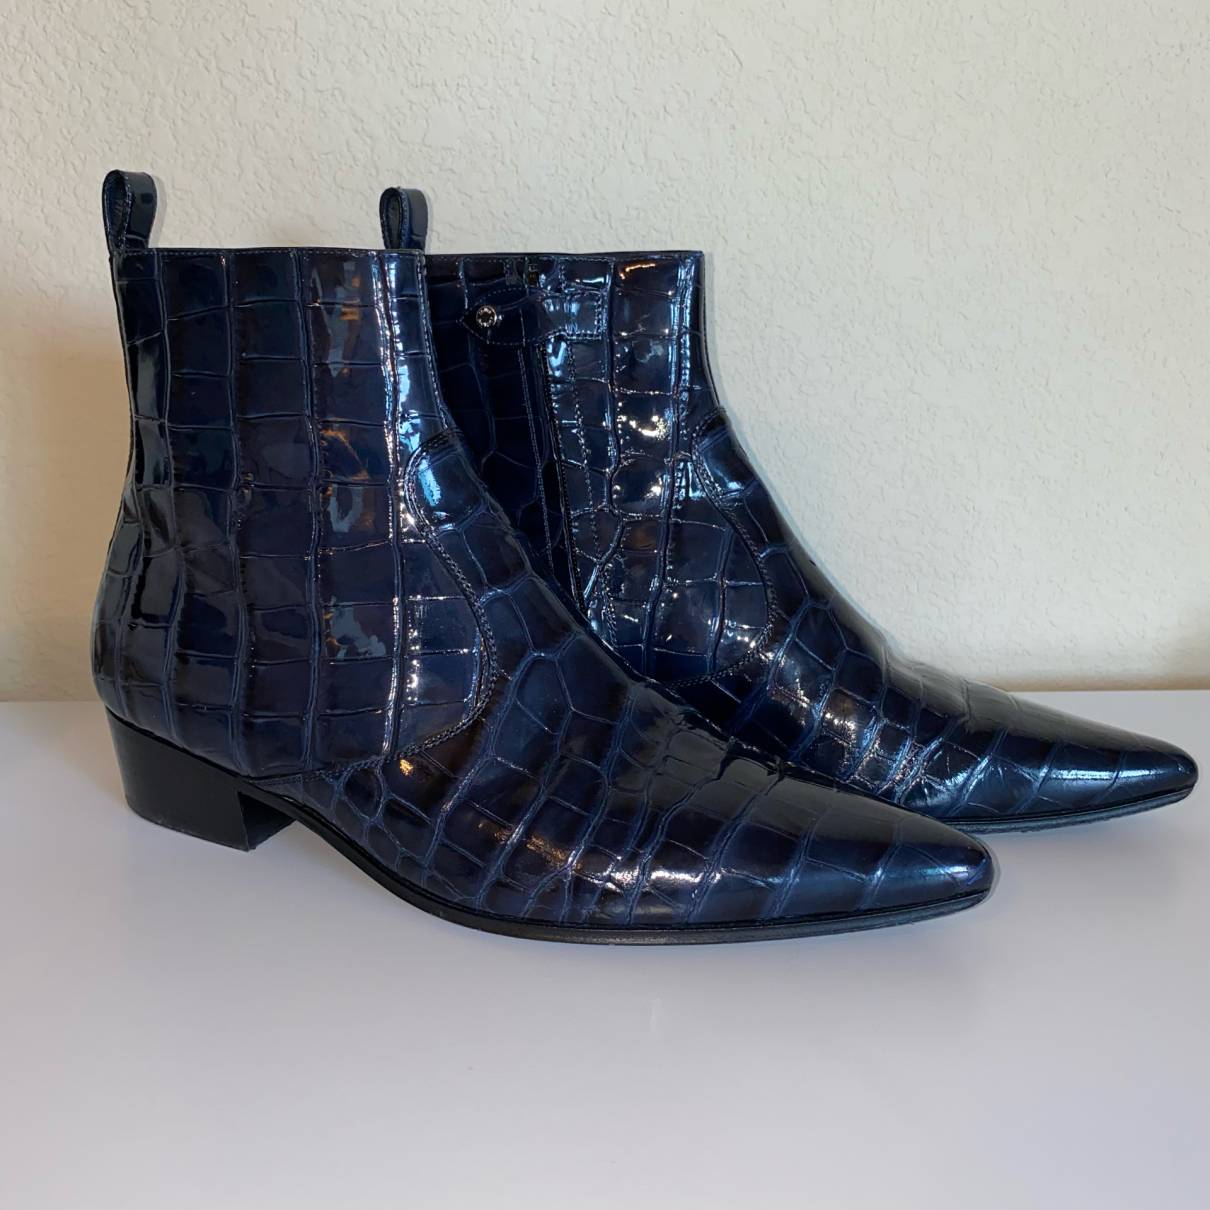 Louis Vuitton Men's Chelsea Boots